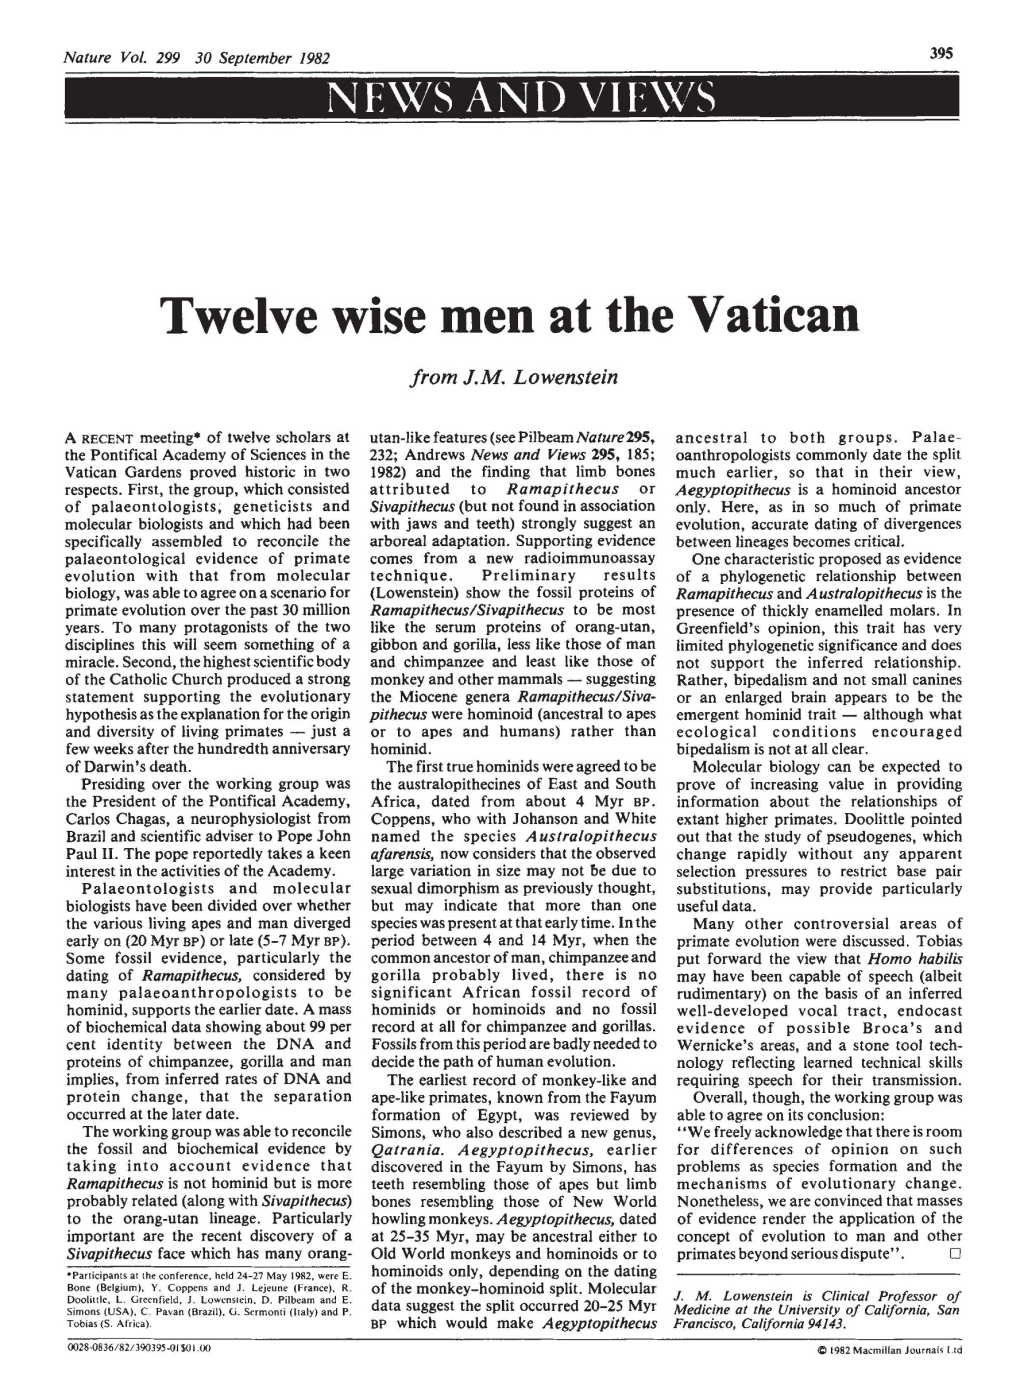 Twelve Wise Men at the Vatican